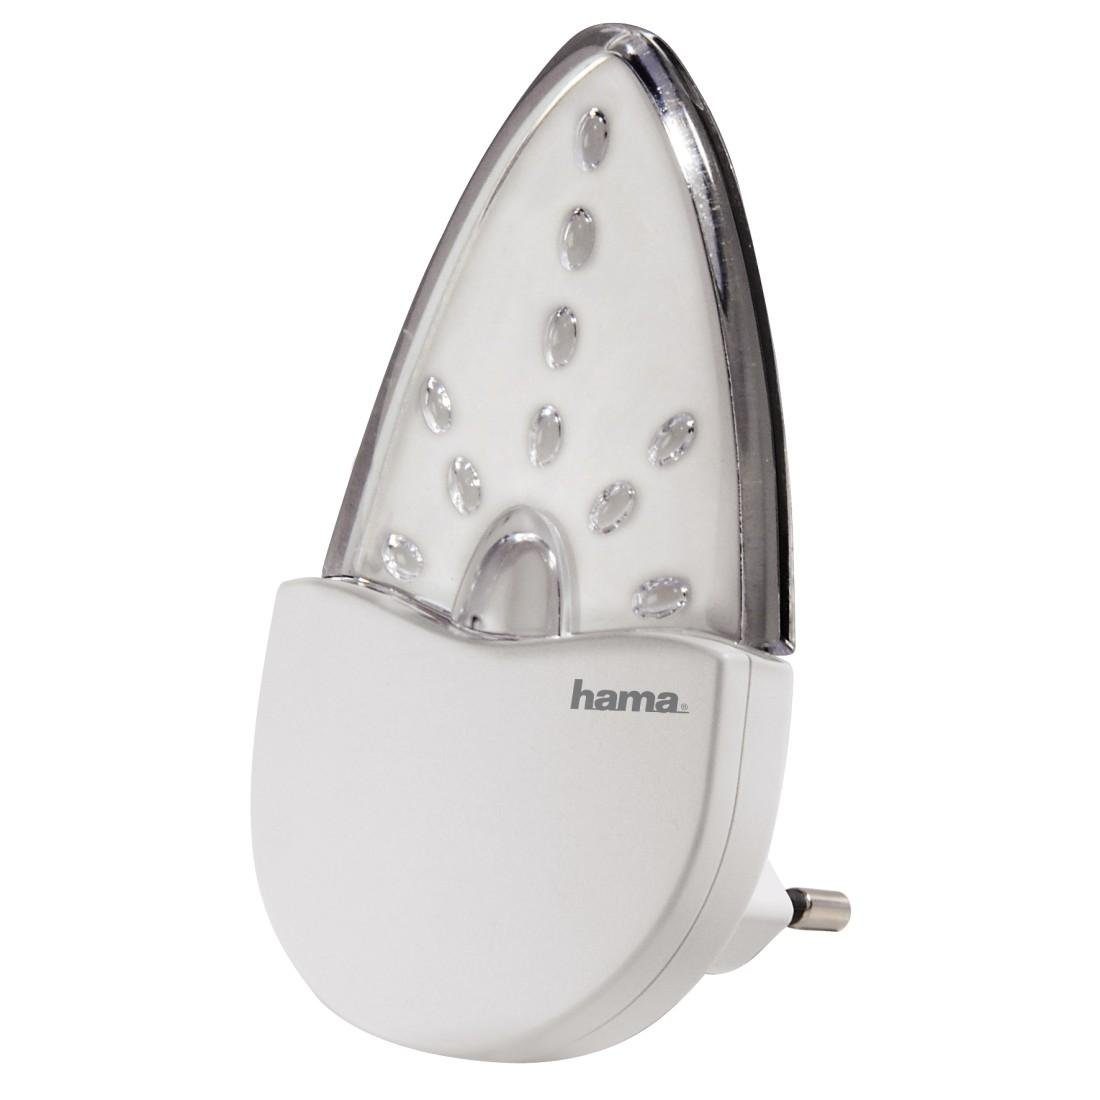 hama lednachtlampje nachtlamp stopcontact voor baby-, kinder- of slaapkamer, amber wit